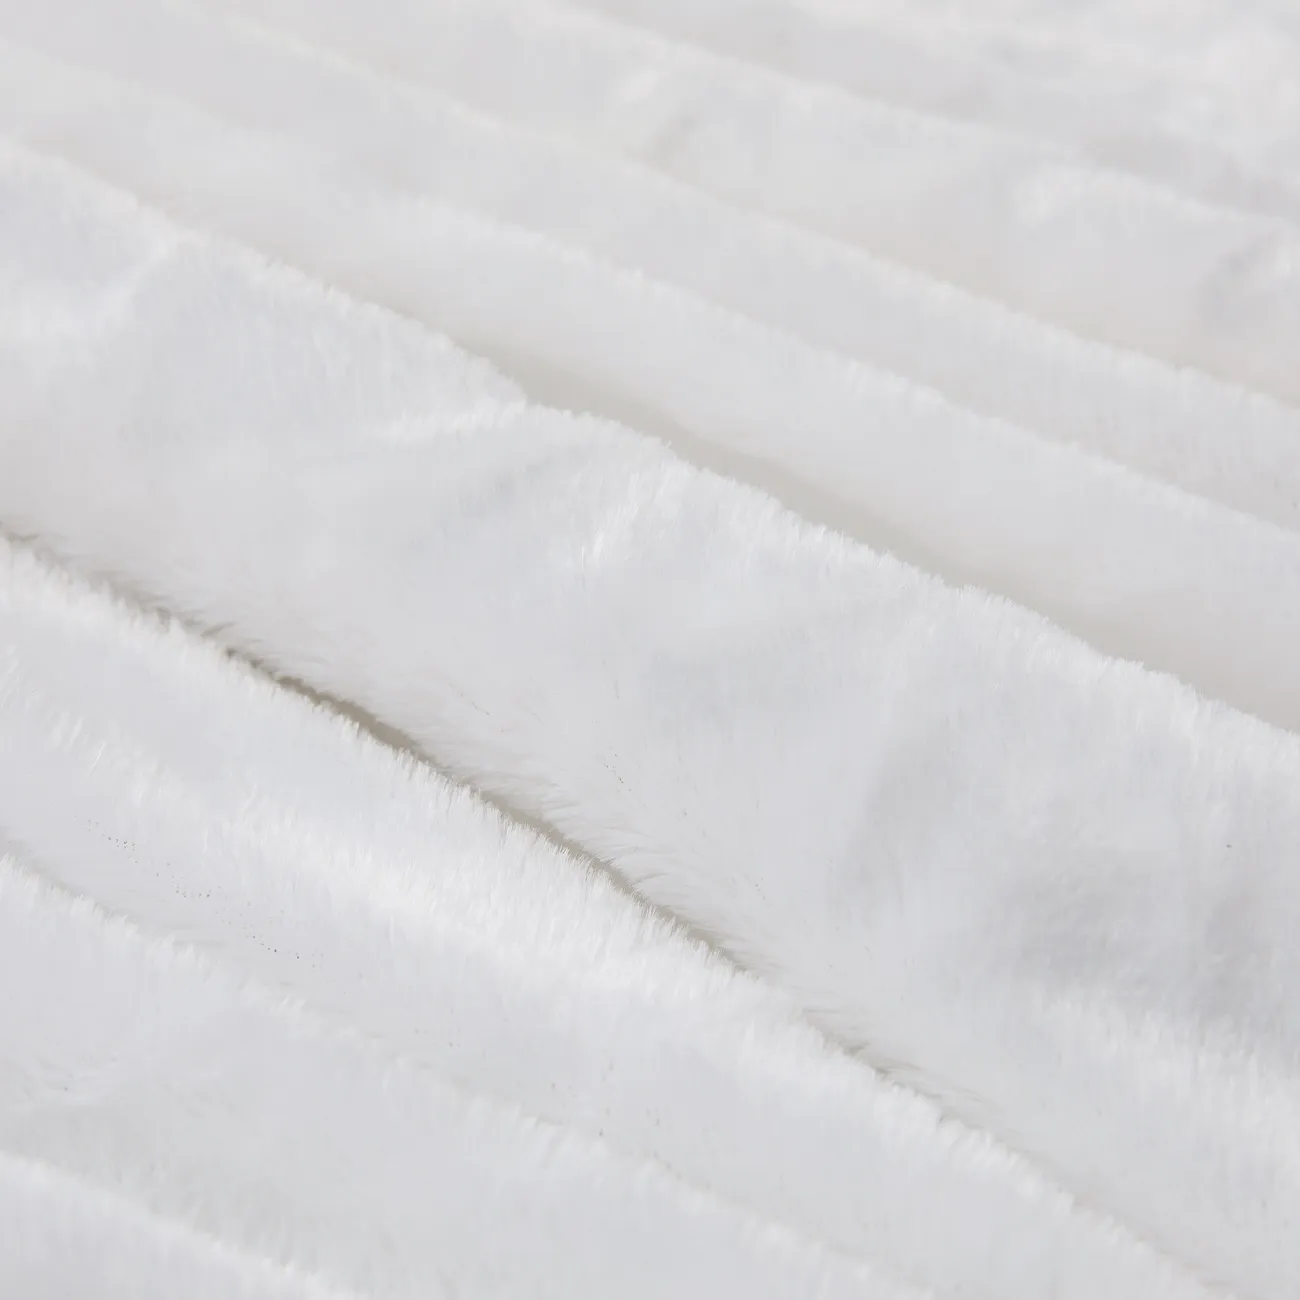 Coperta in pile PV bianco premium - ultra morbida, resistente, lavabile in lavatrice - perfetta per il comfort domestico e l'arredamento elegante Bianco big image 1